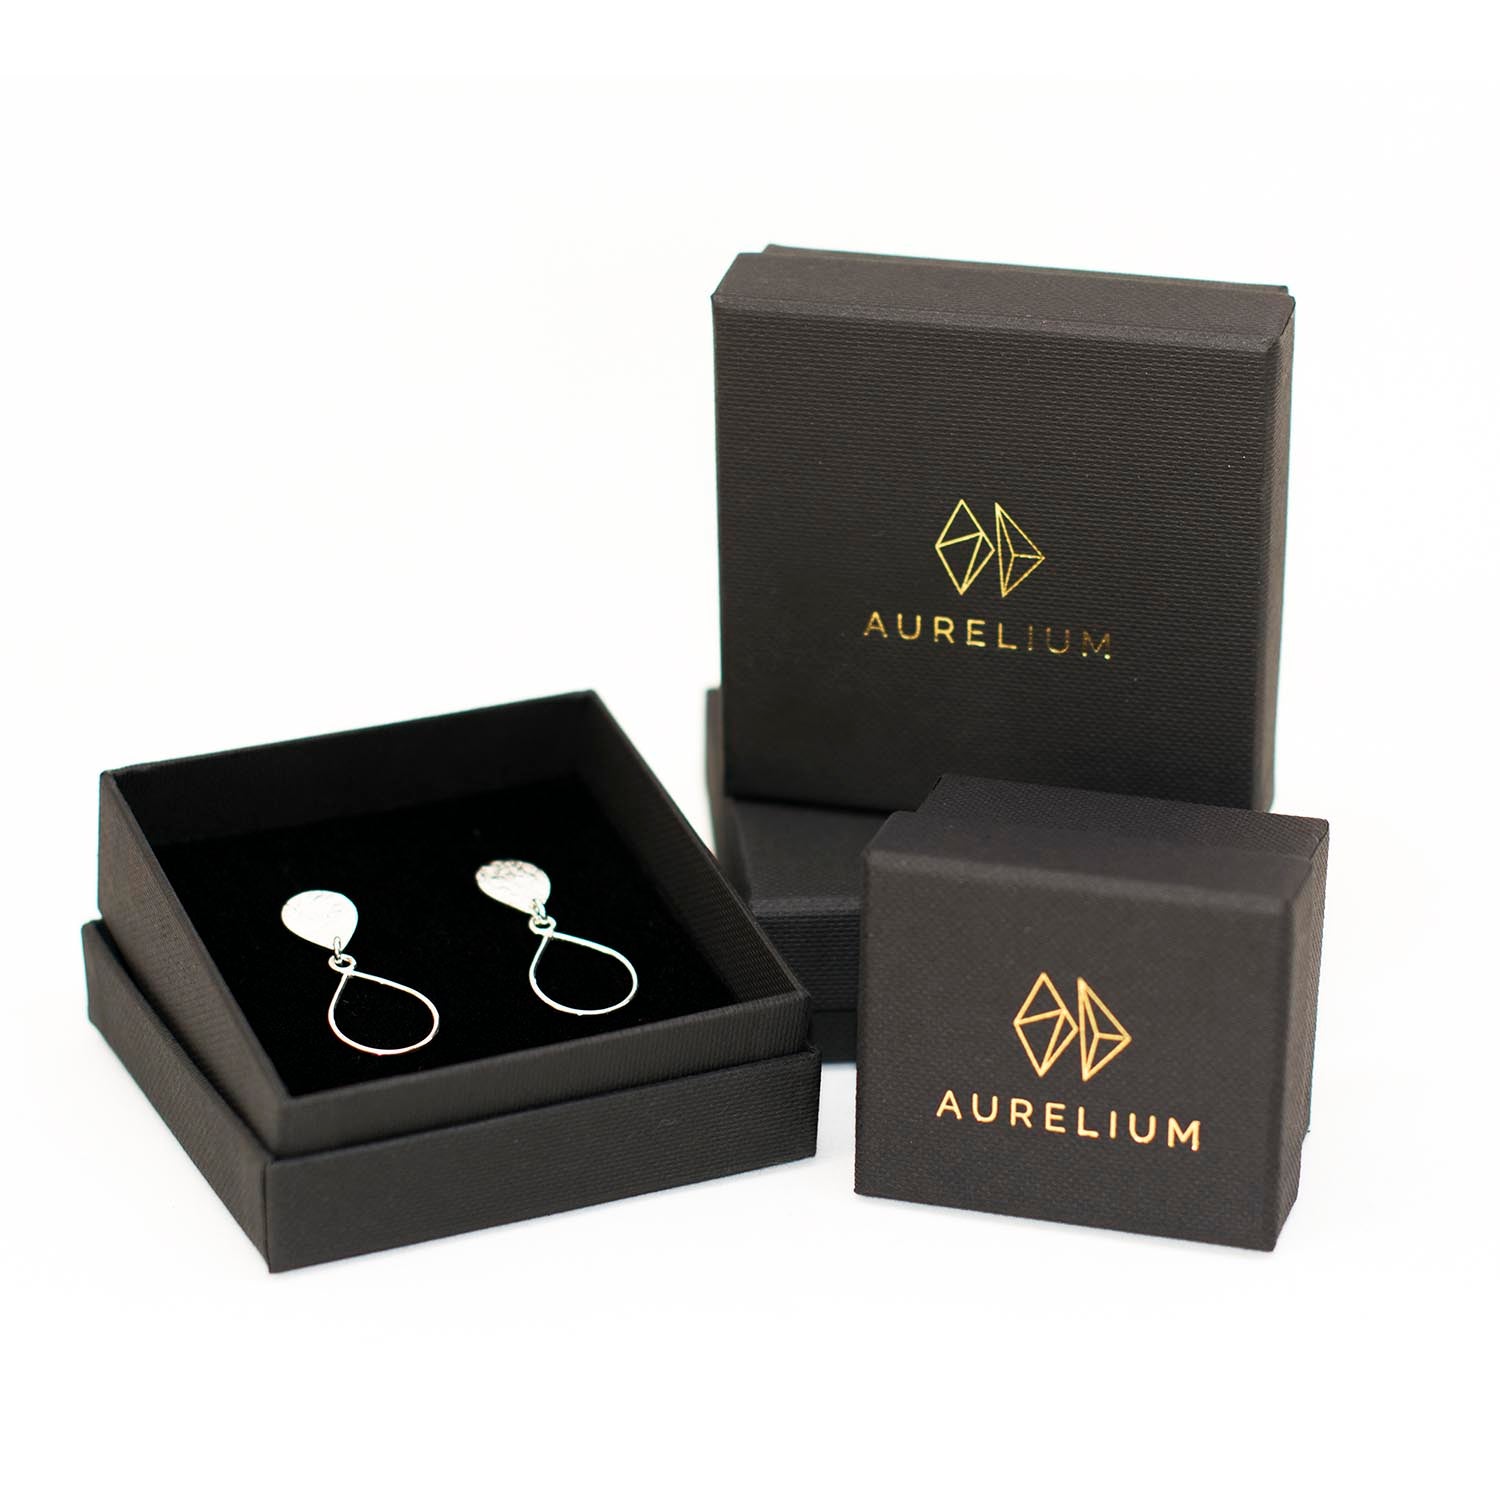 sterling silver droplet earrings in aurelium black gift box